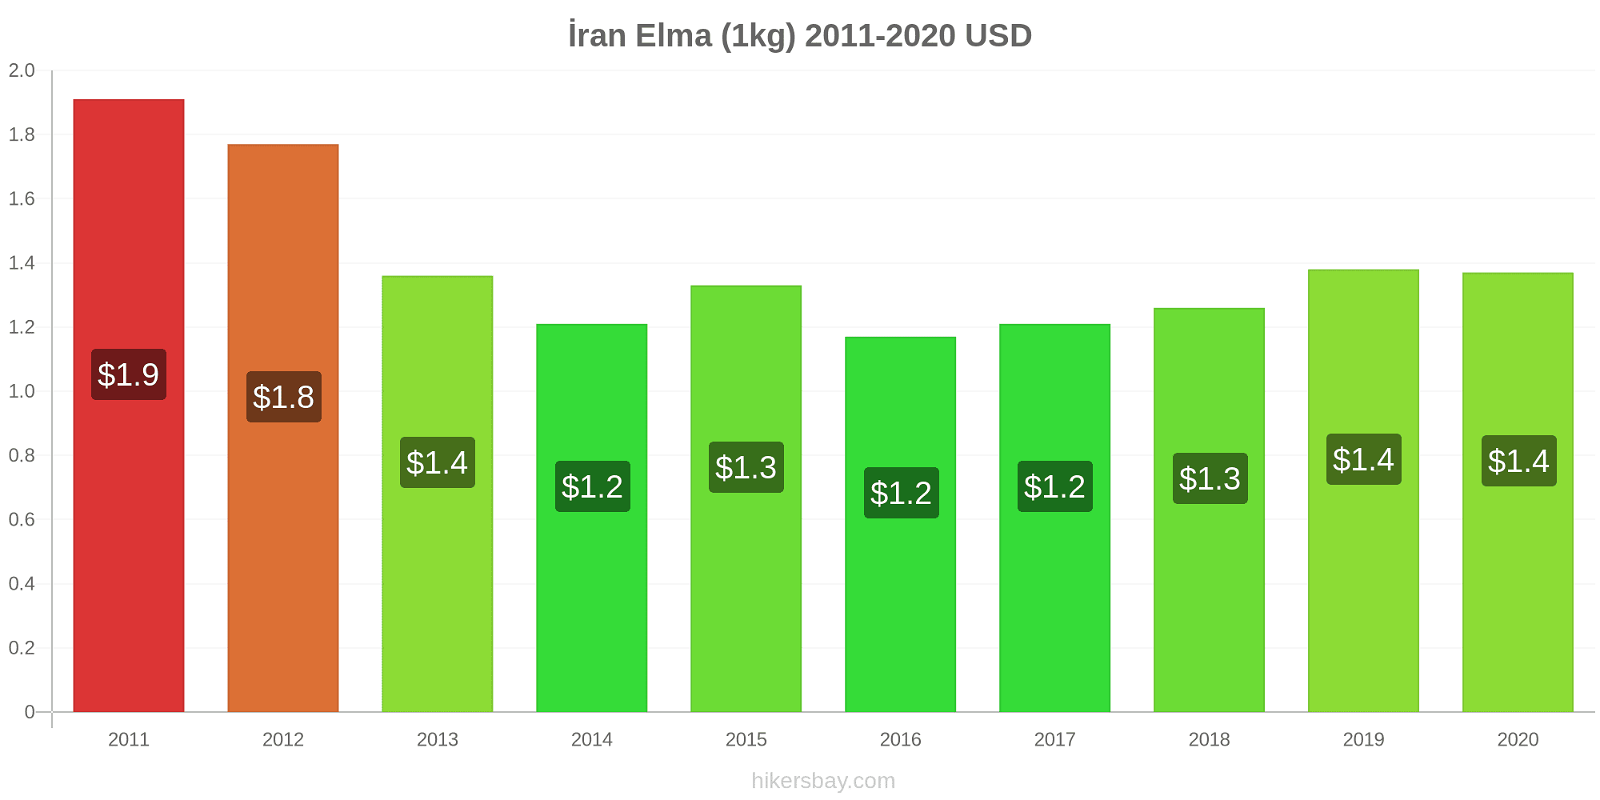 İran fiyat değişiklikleri Elma (1kg) hikersbay.com